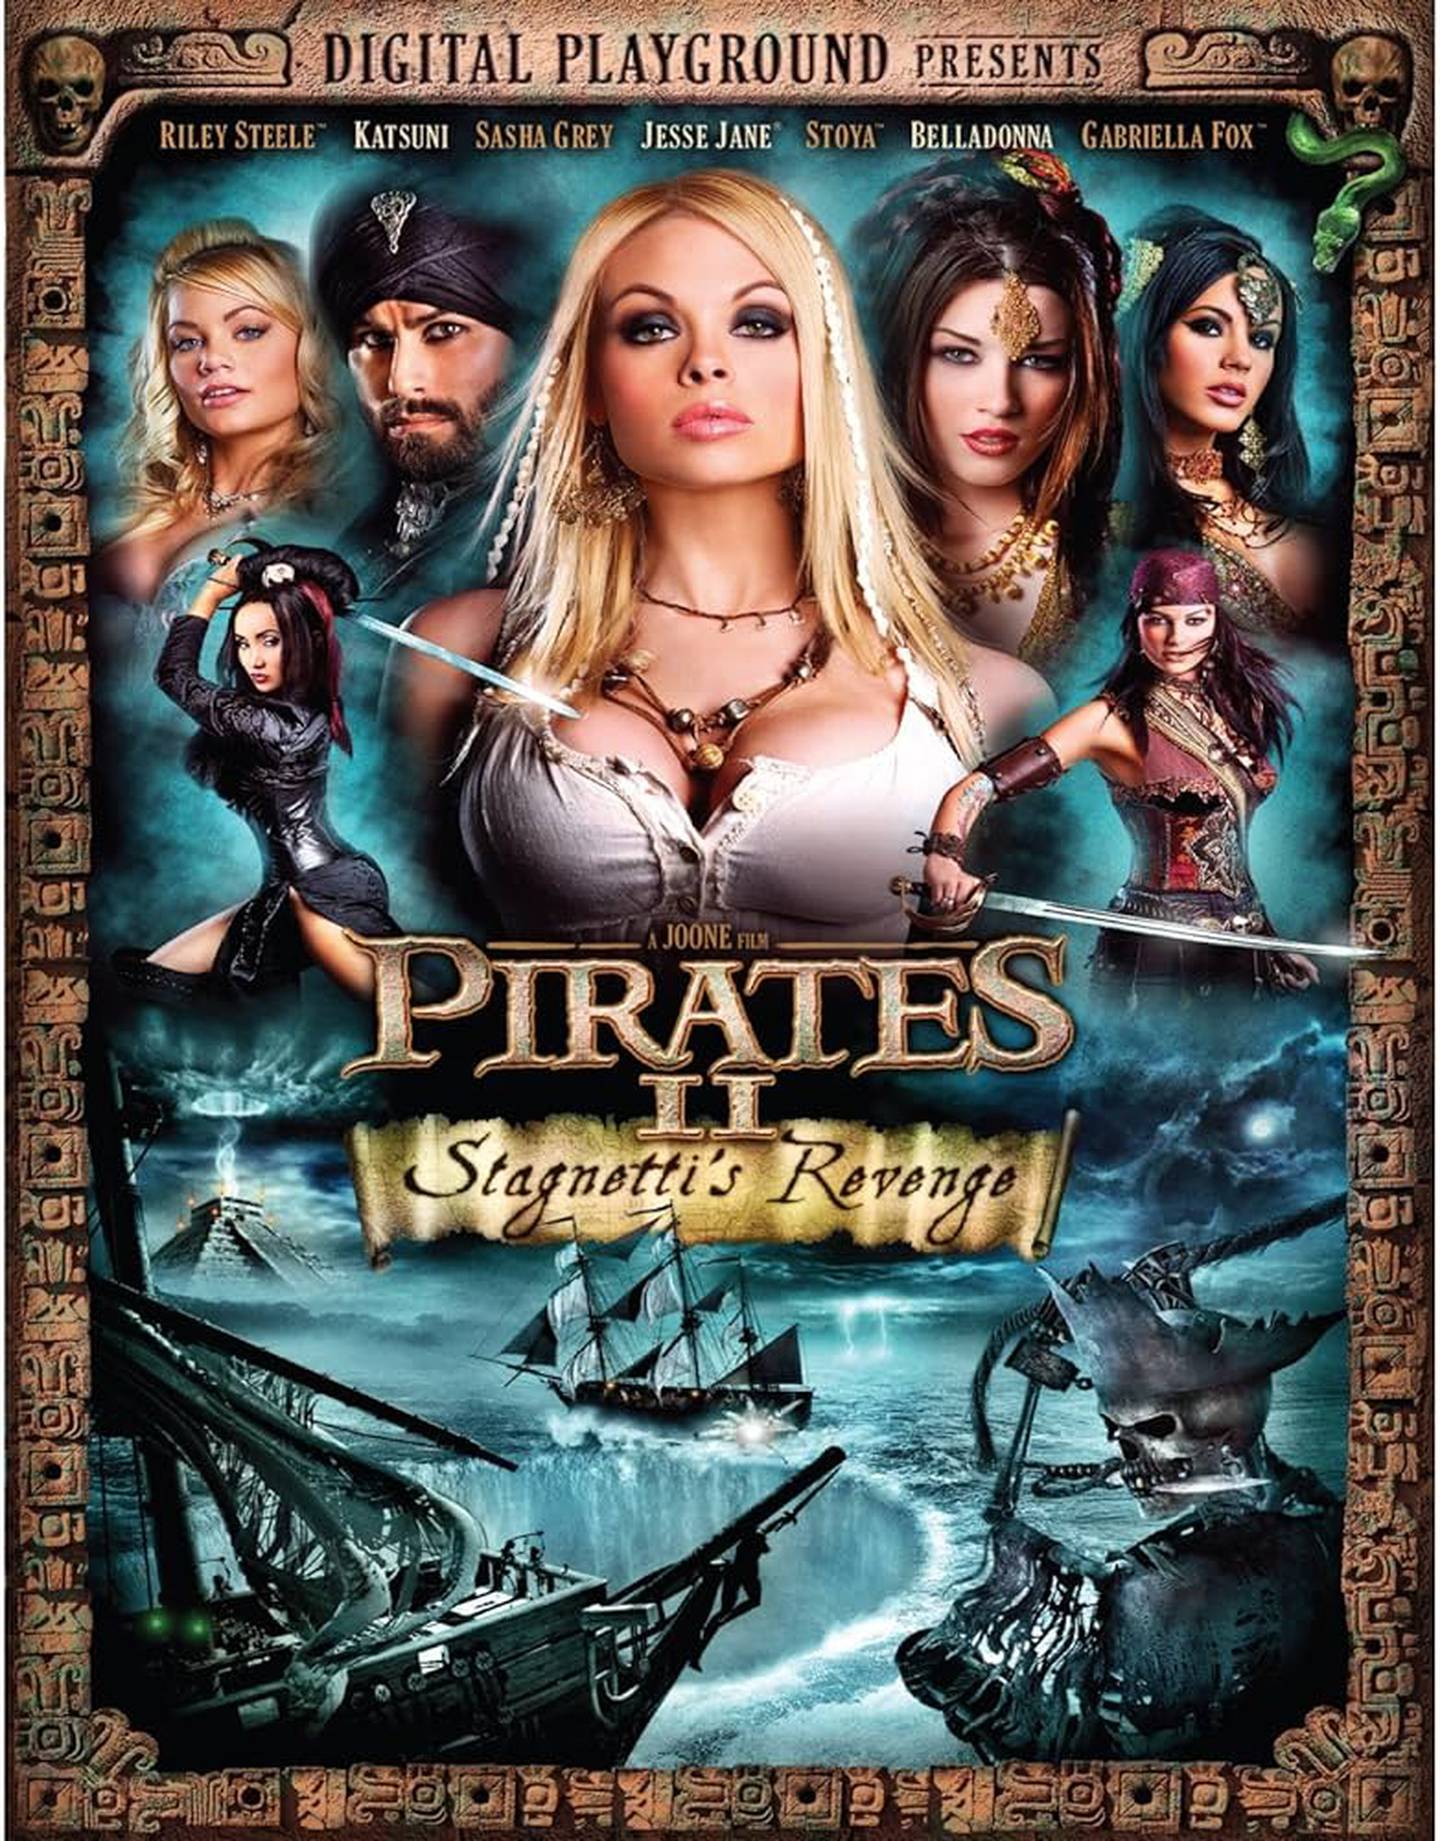 La secuela de 'Piratas' es recordada como una de las películas porno más ambiciosas. Jesse Jane fue protagonista. Foto: Amazon